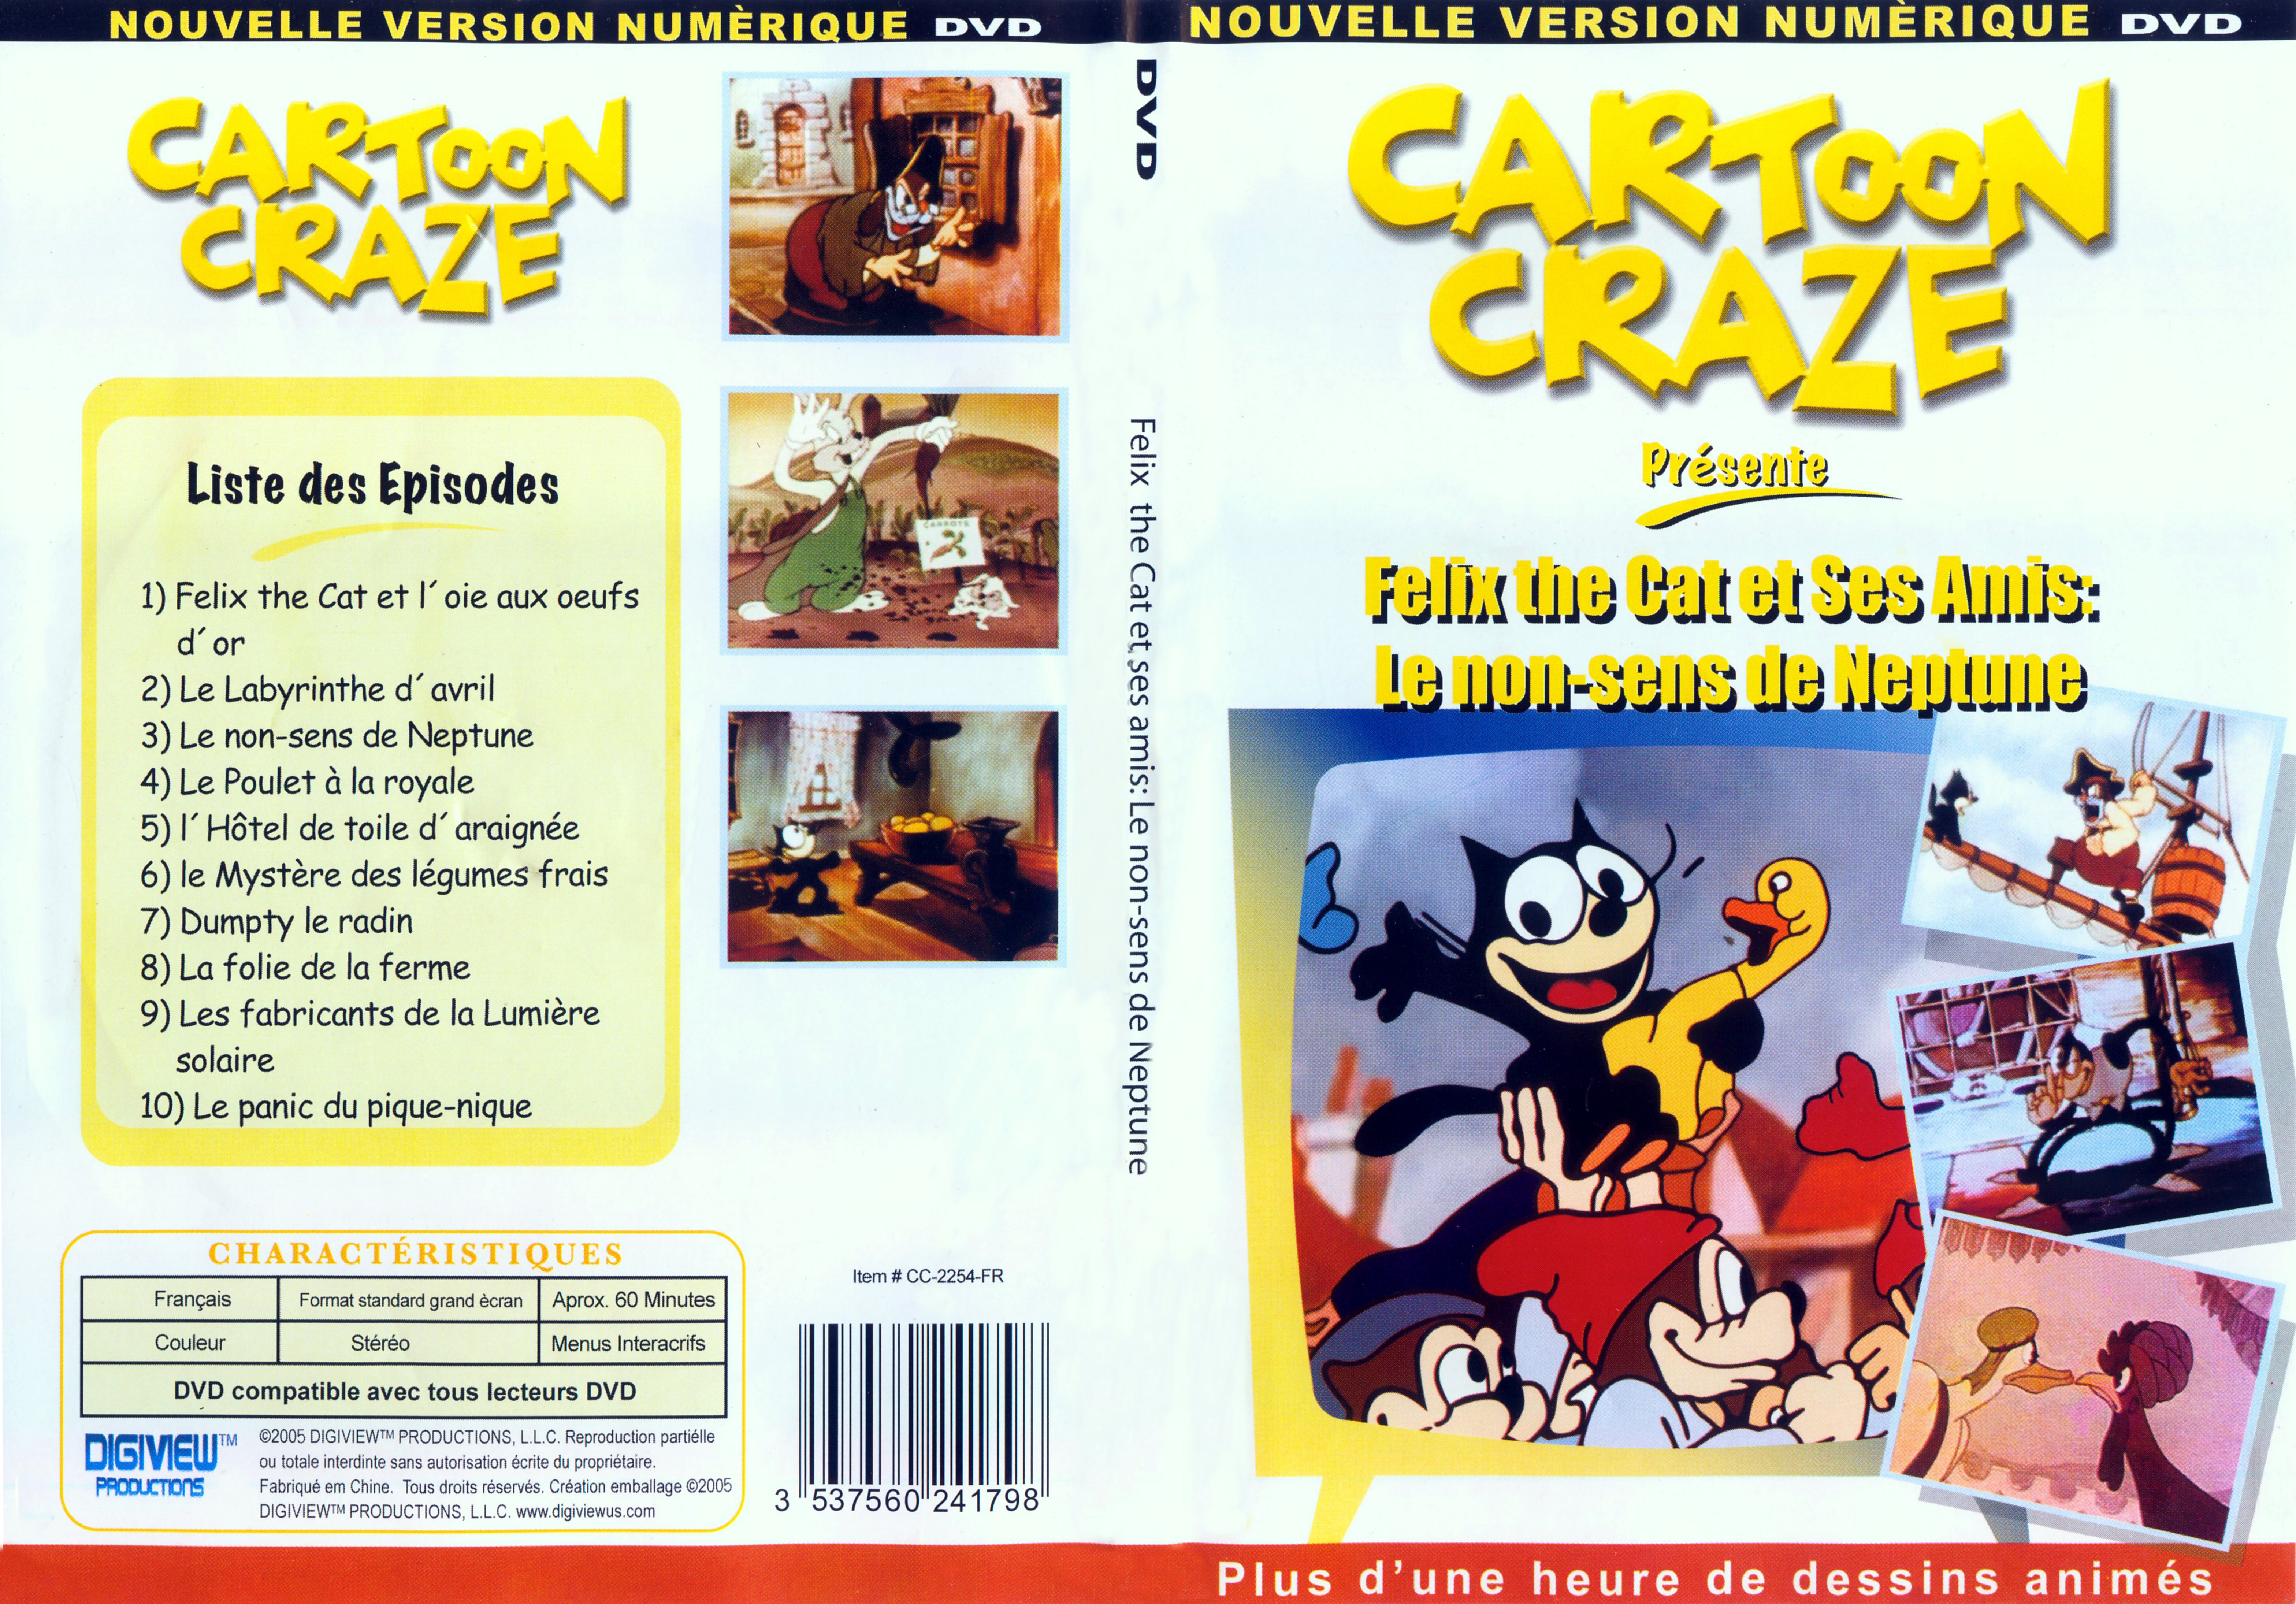 Jaquette DVD Cartoon Craze - Felix the cat - Le non sens de Neptune